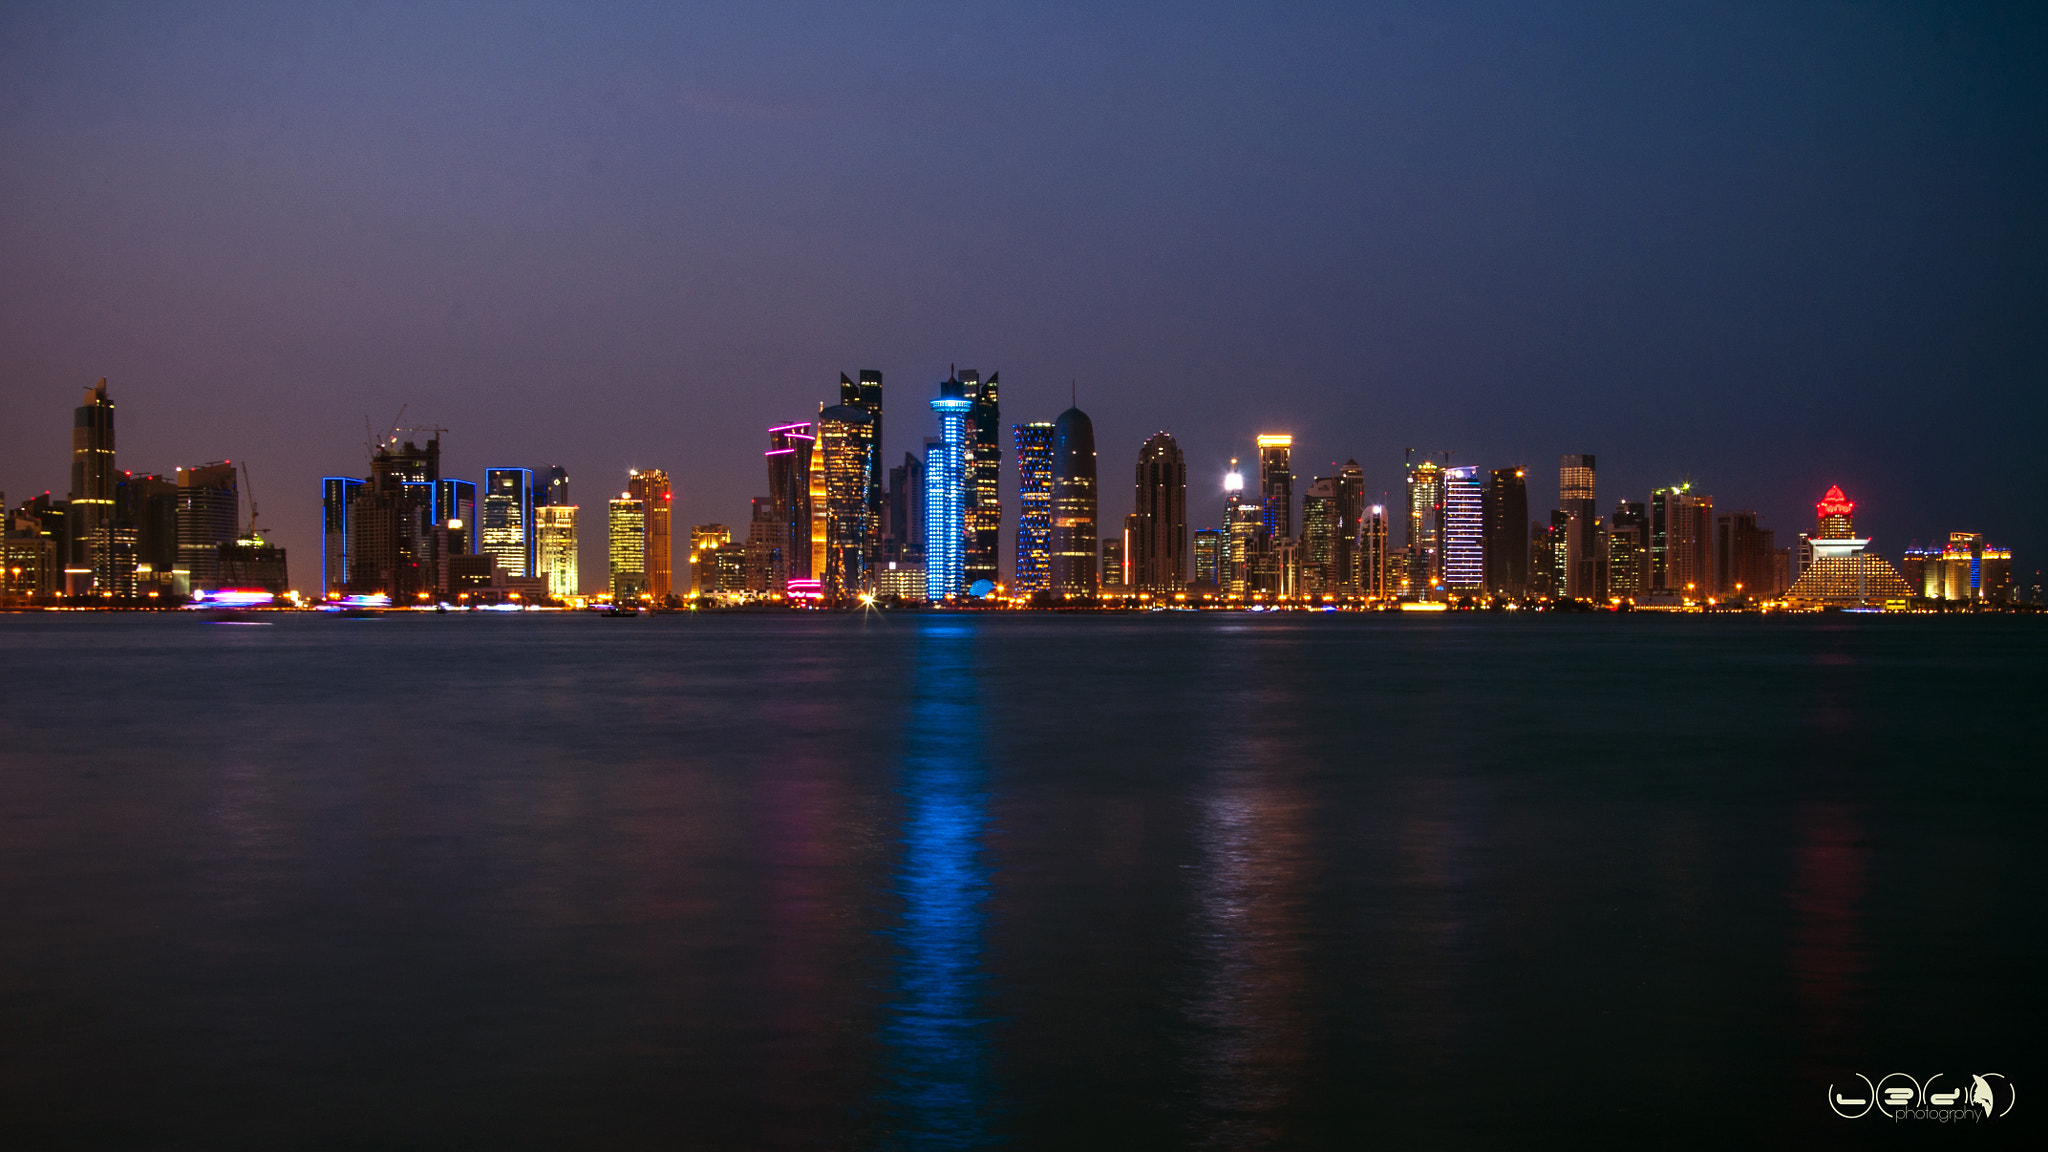 Nikon D90 sample photo. Qatar-doha at night photography